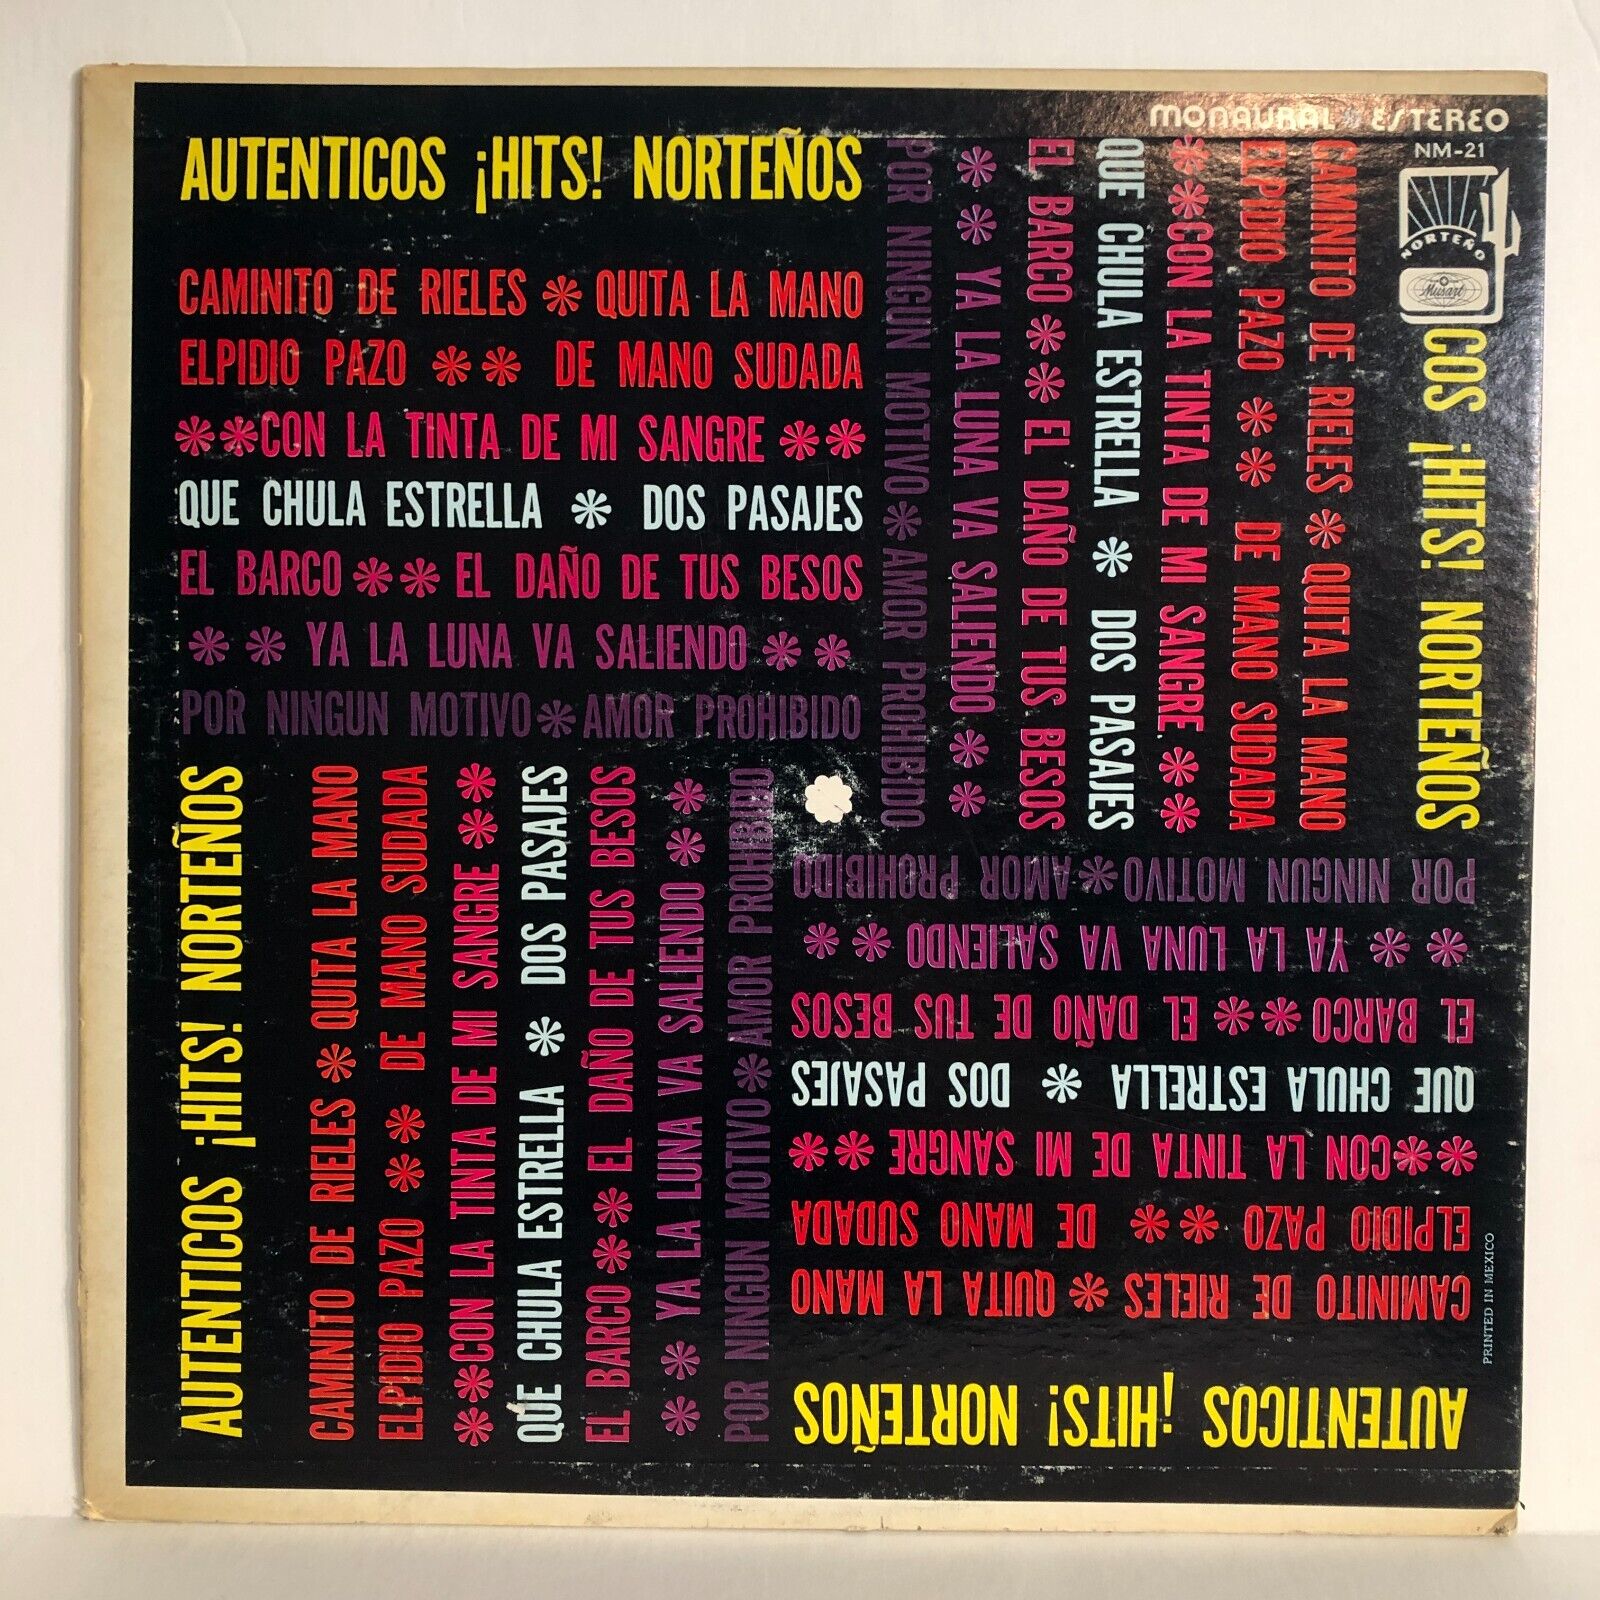 Authenticos Hits! Norteños 1970s Musart Compilation LP Norterno Vinyl Record NM